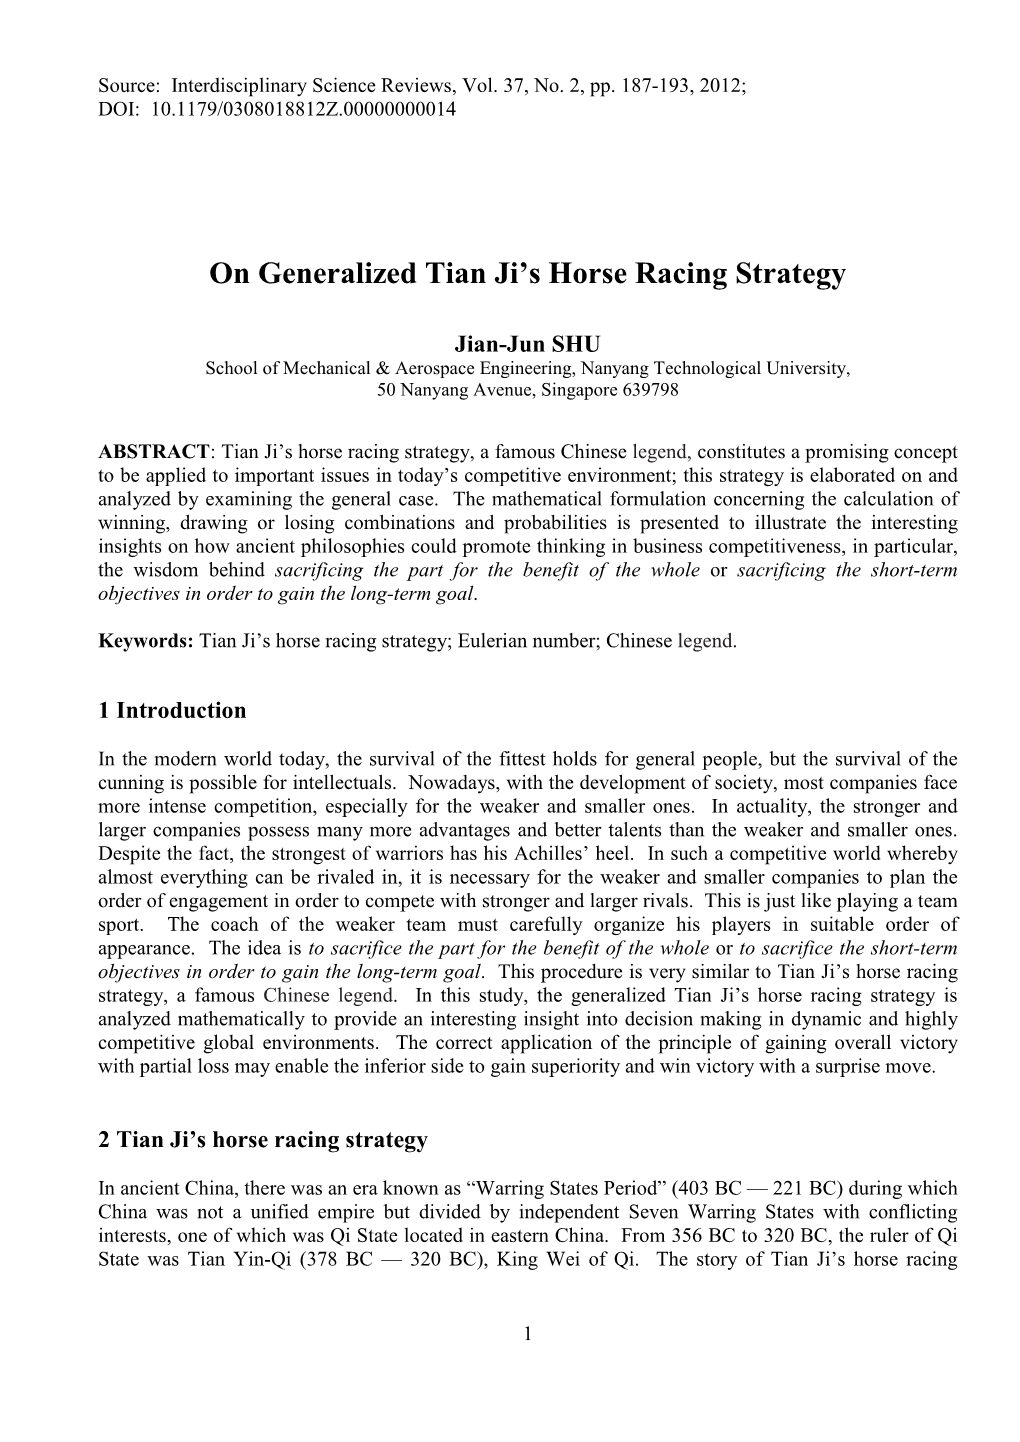 On Generalized Tian Ji's Horse Racing Strategy